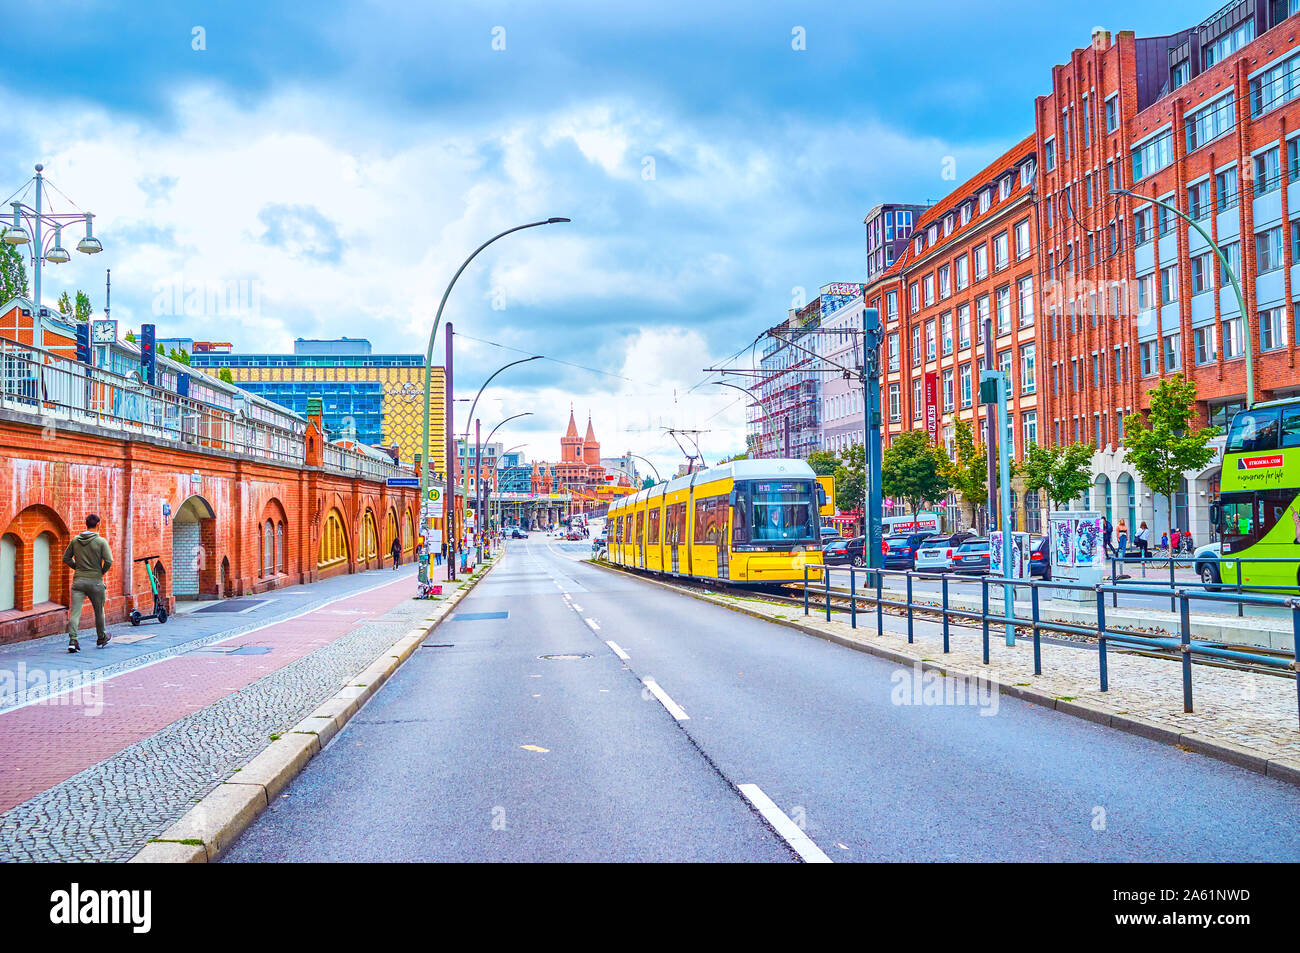 Berlino, Germania - 3 ottobre 2019: La scena urbana con il moderno tram giallo, sgombrare lungo la Warschauer Strasse nel centro di Berlino, il 3 ottobre in essere Foto Stock